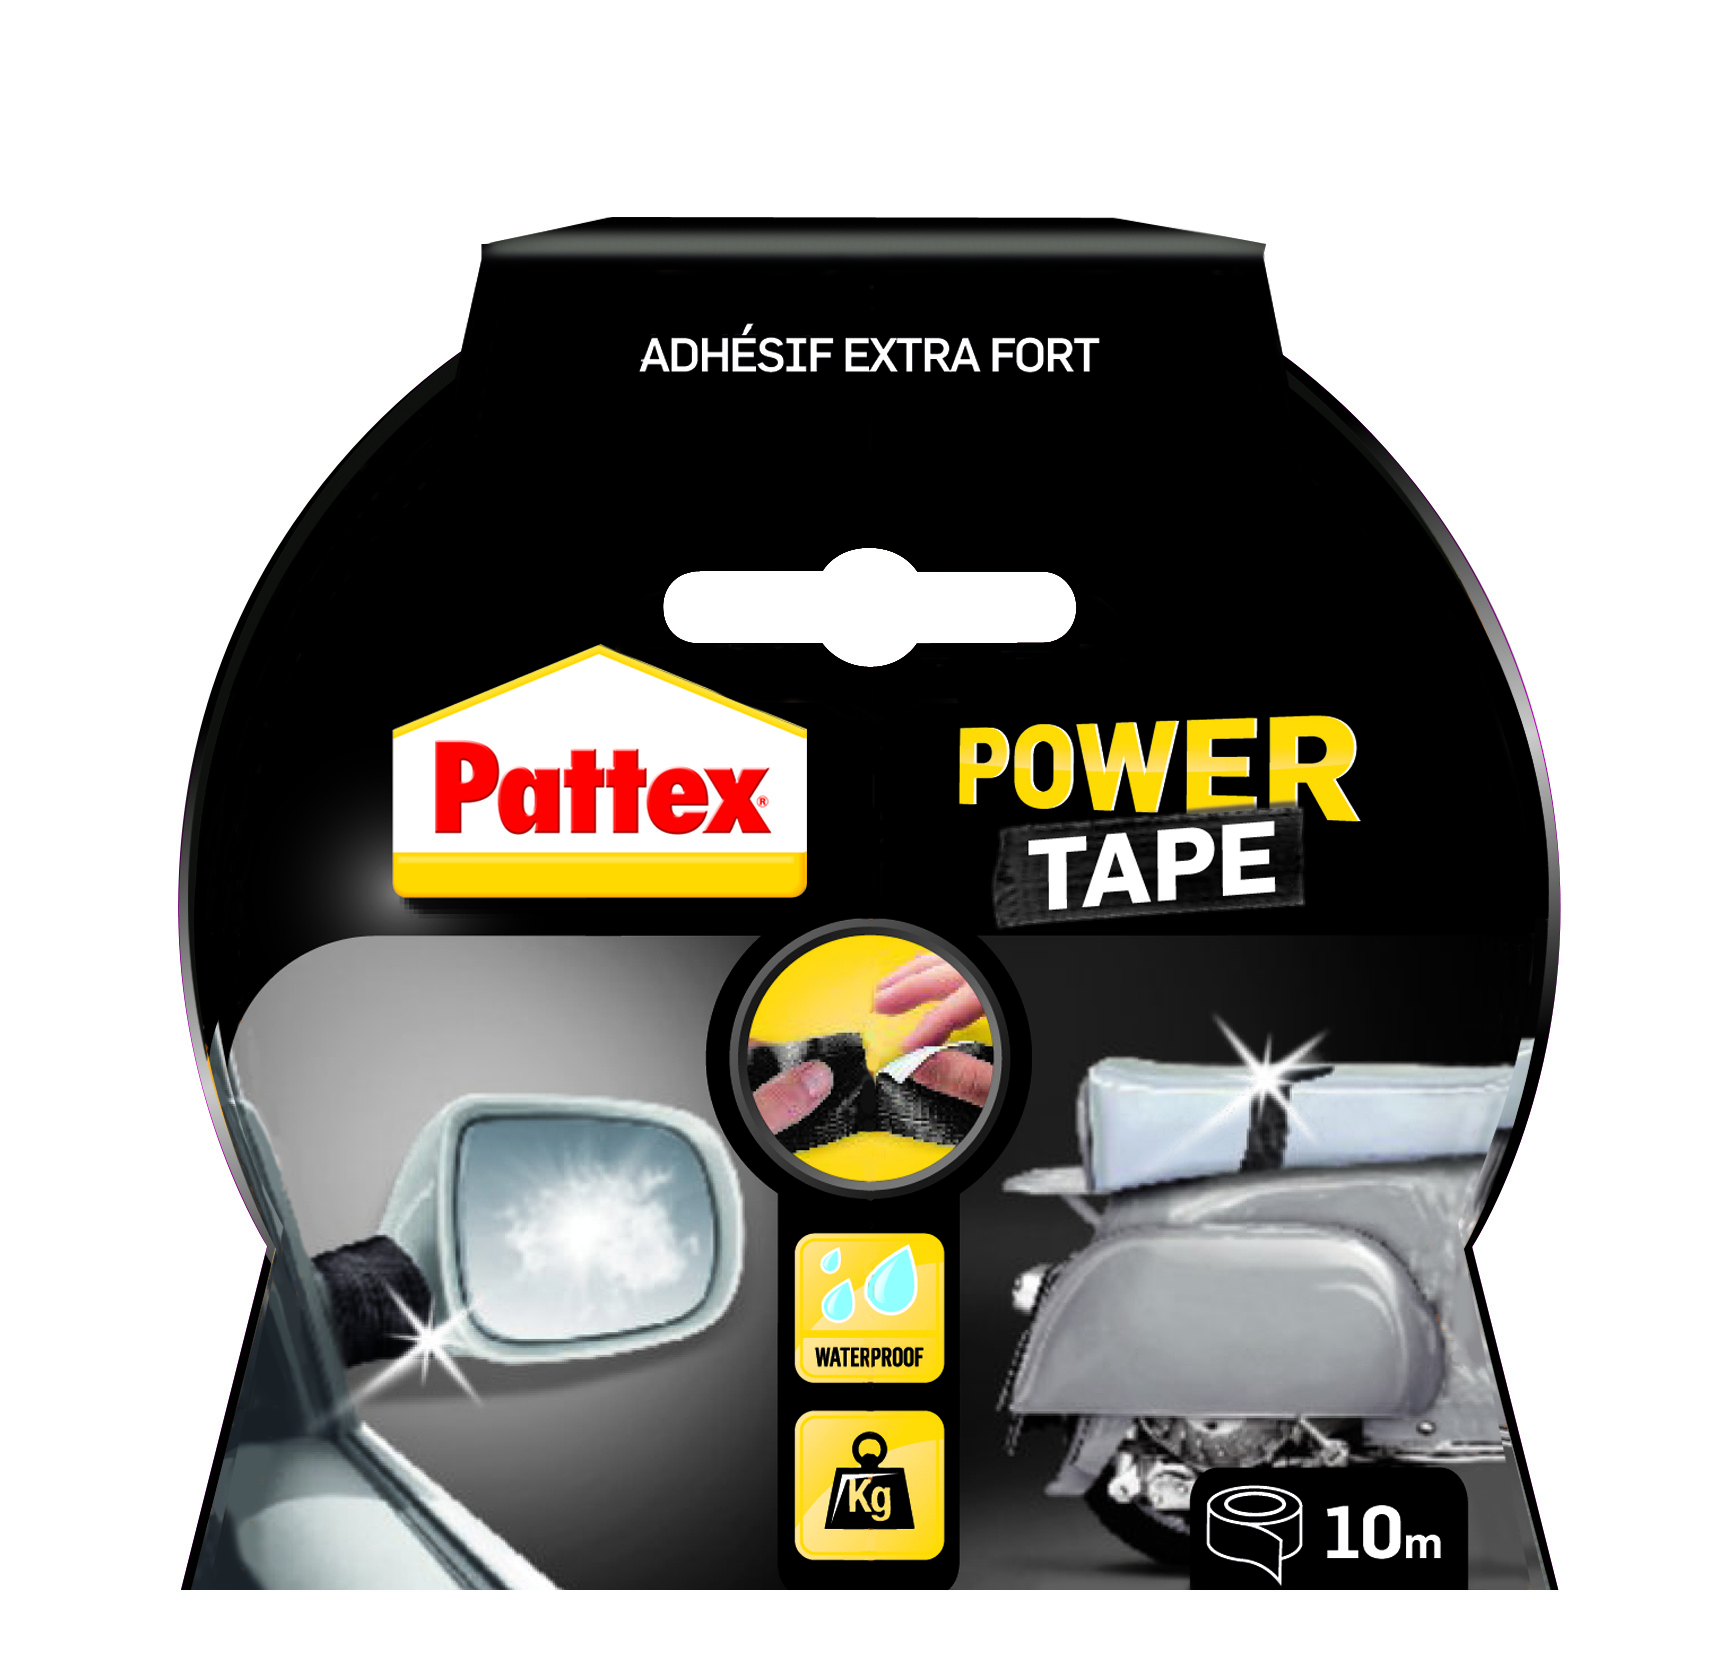 Pattex adhésifs réparation power tape noir etui 10m - PATTEX